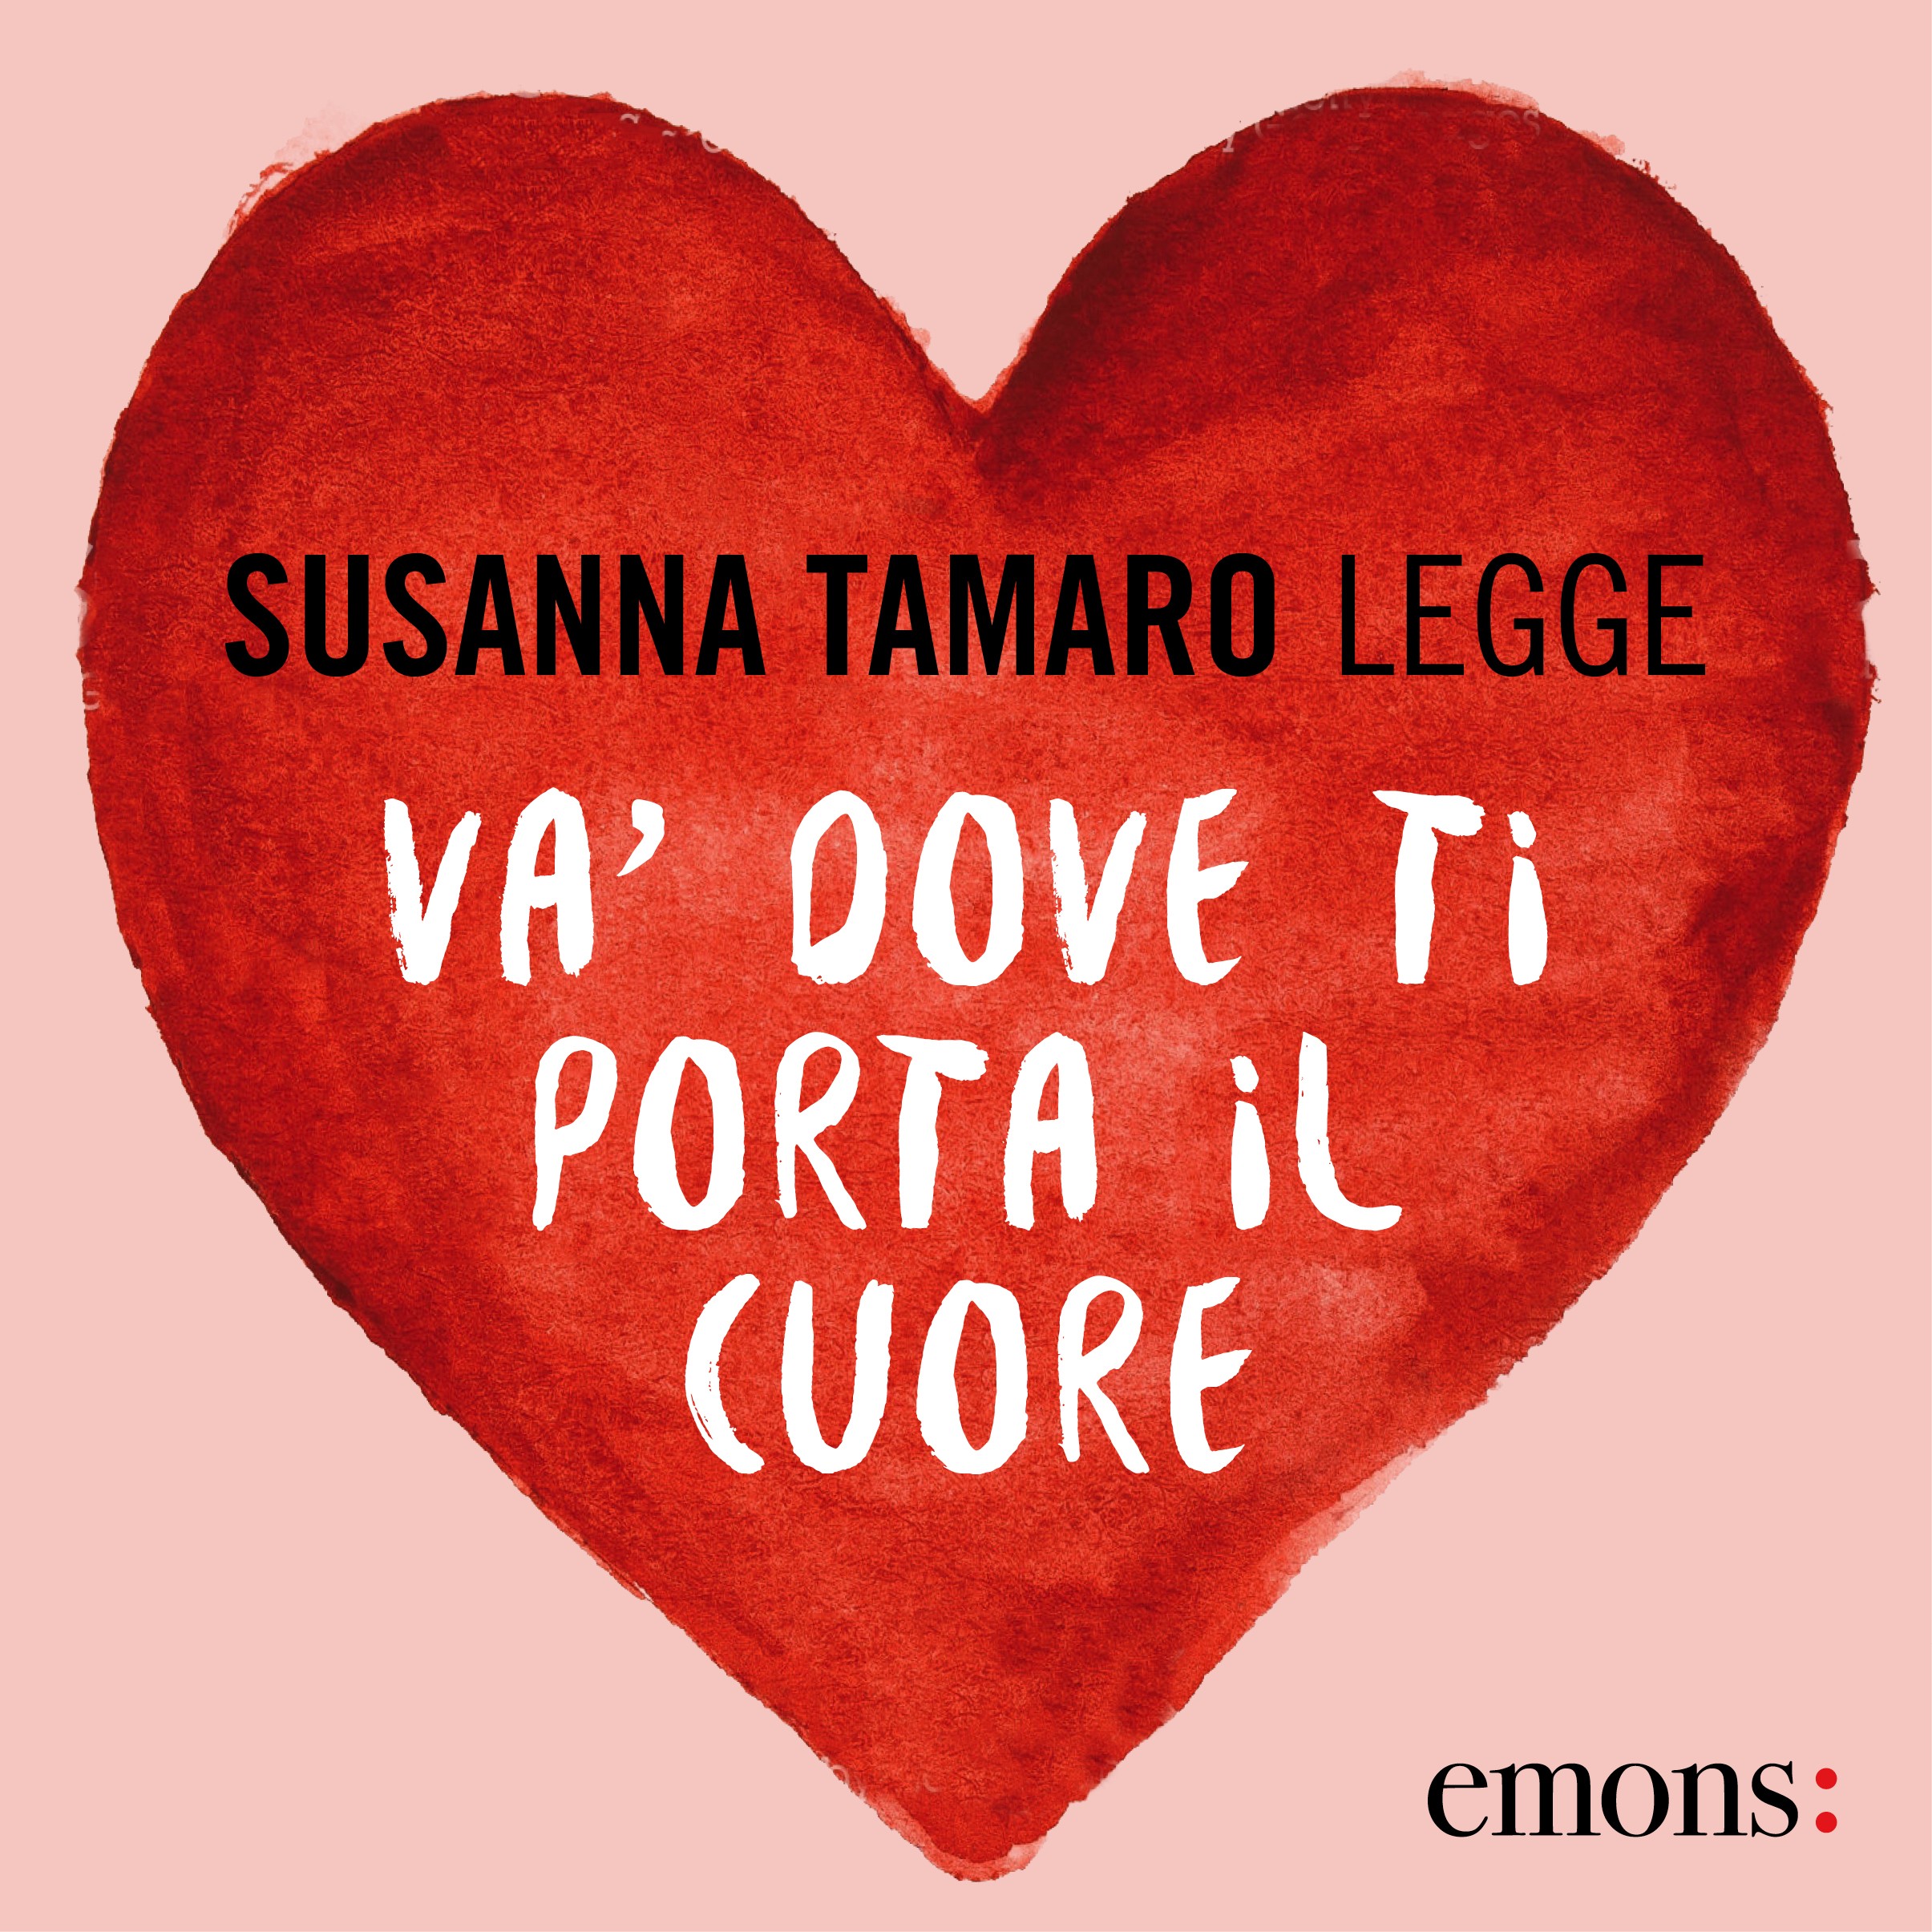 Va' dove ti porta il cuore, Susanna Tamaro Ebook Bookrepublic